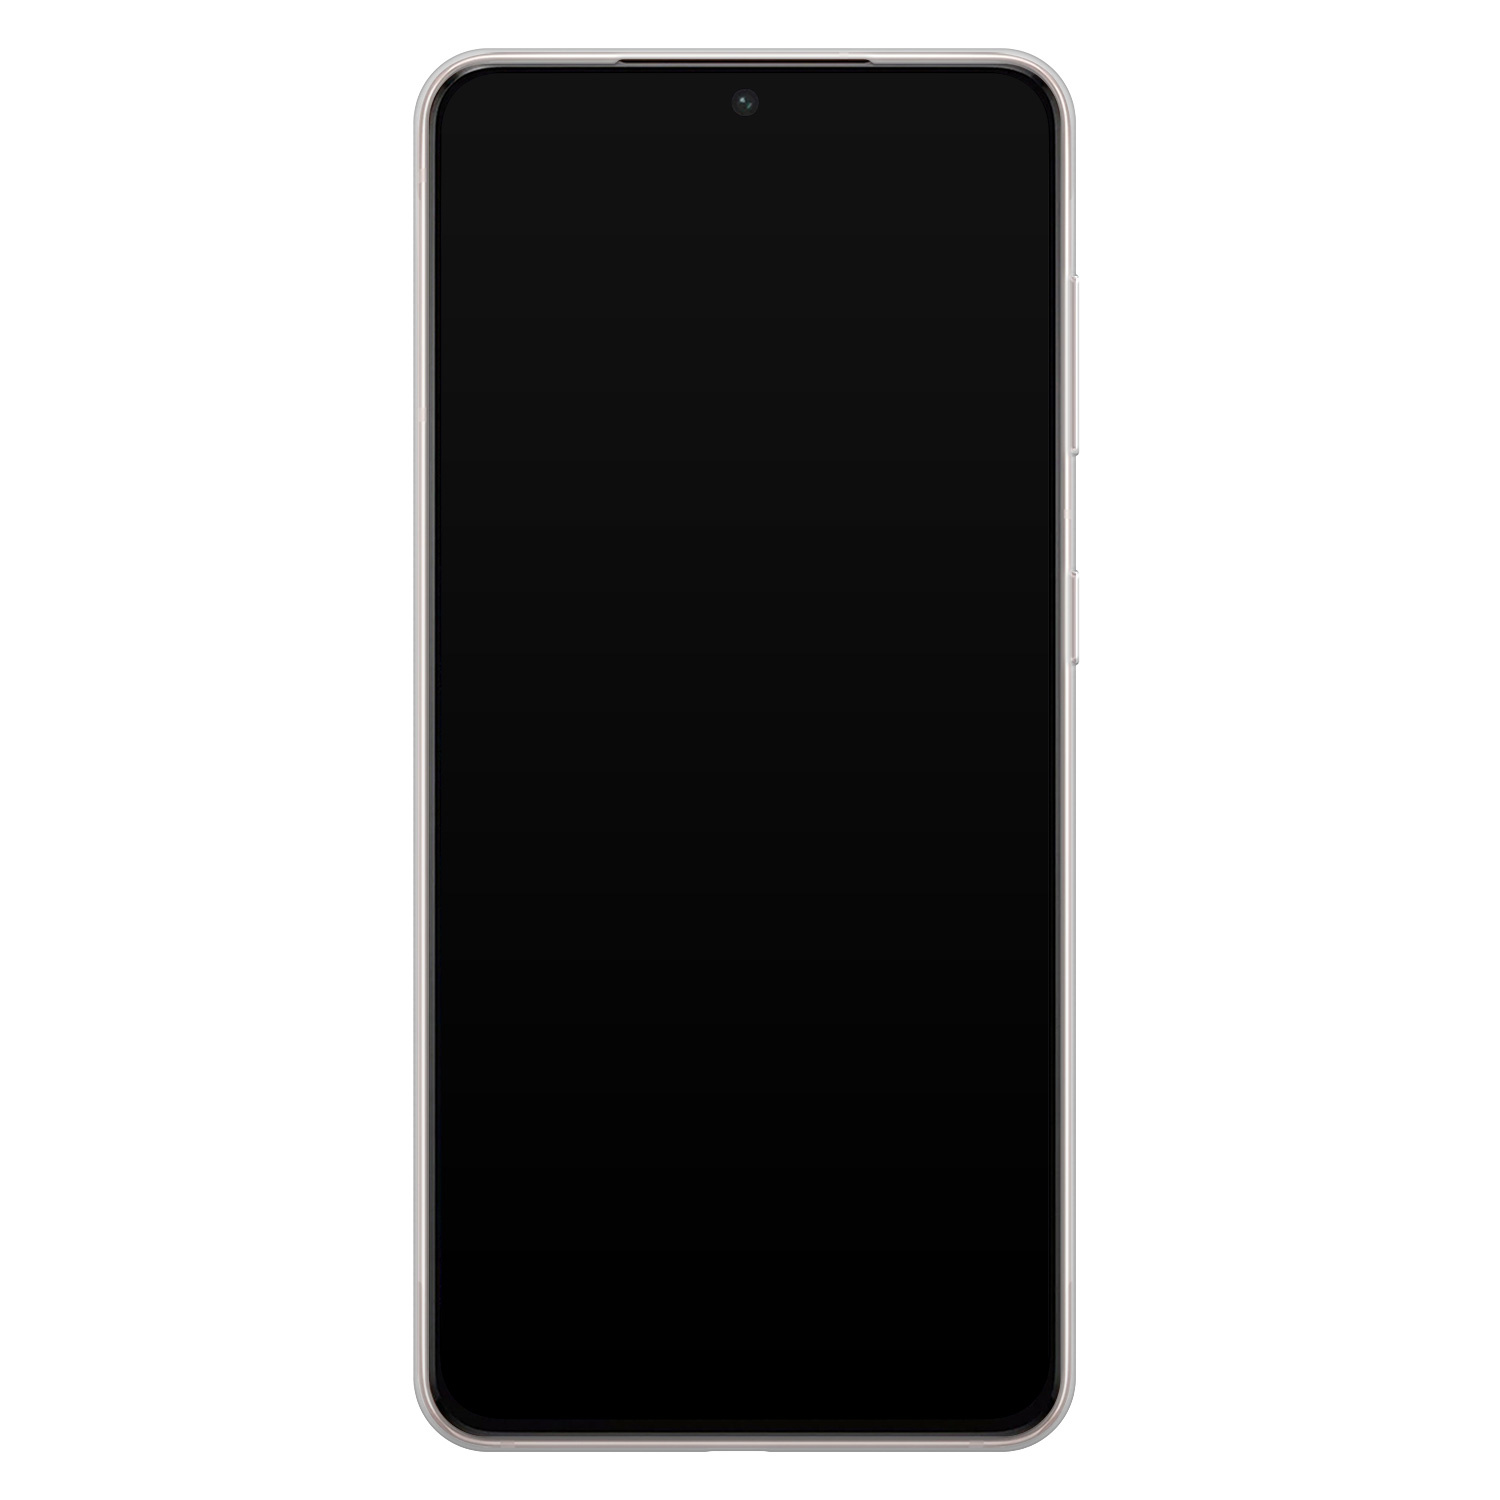 Leuke Telefoonhoesjes Samsung Galaxy S21 siliconen hoesje - Marmer roze grijs